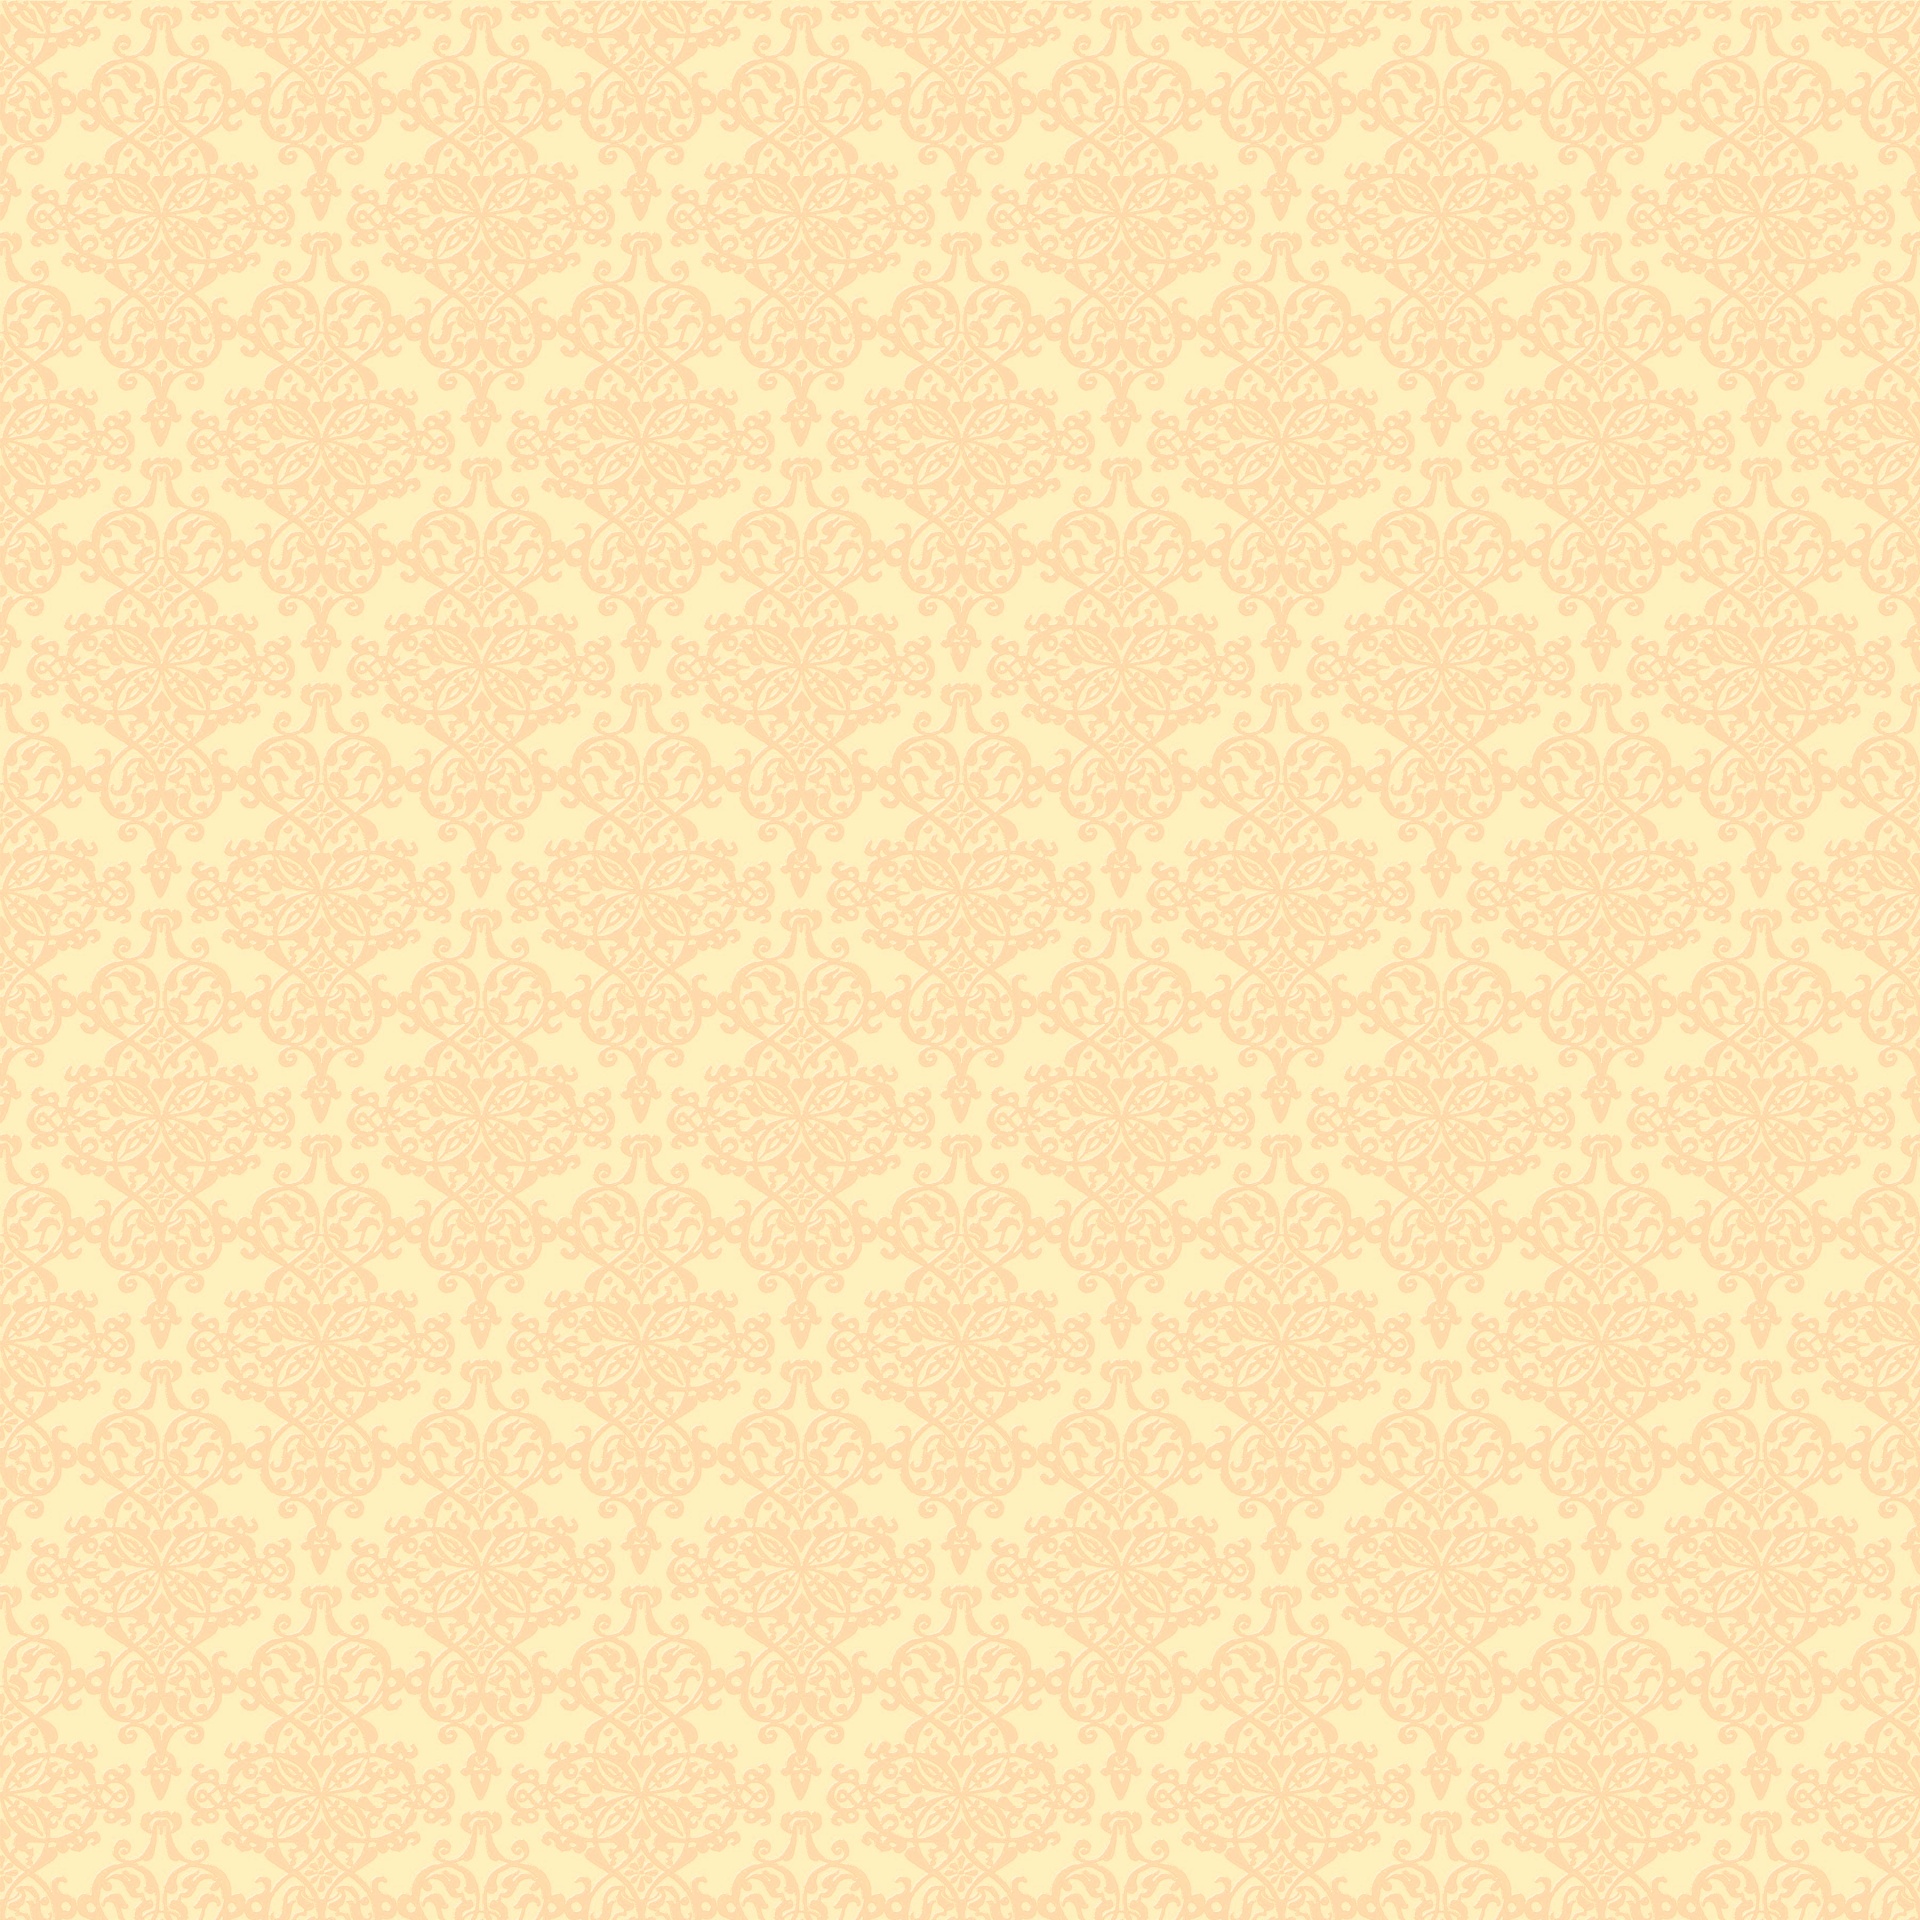 damask pattern wallpaper free photo